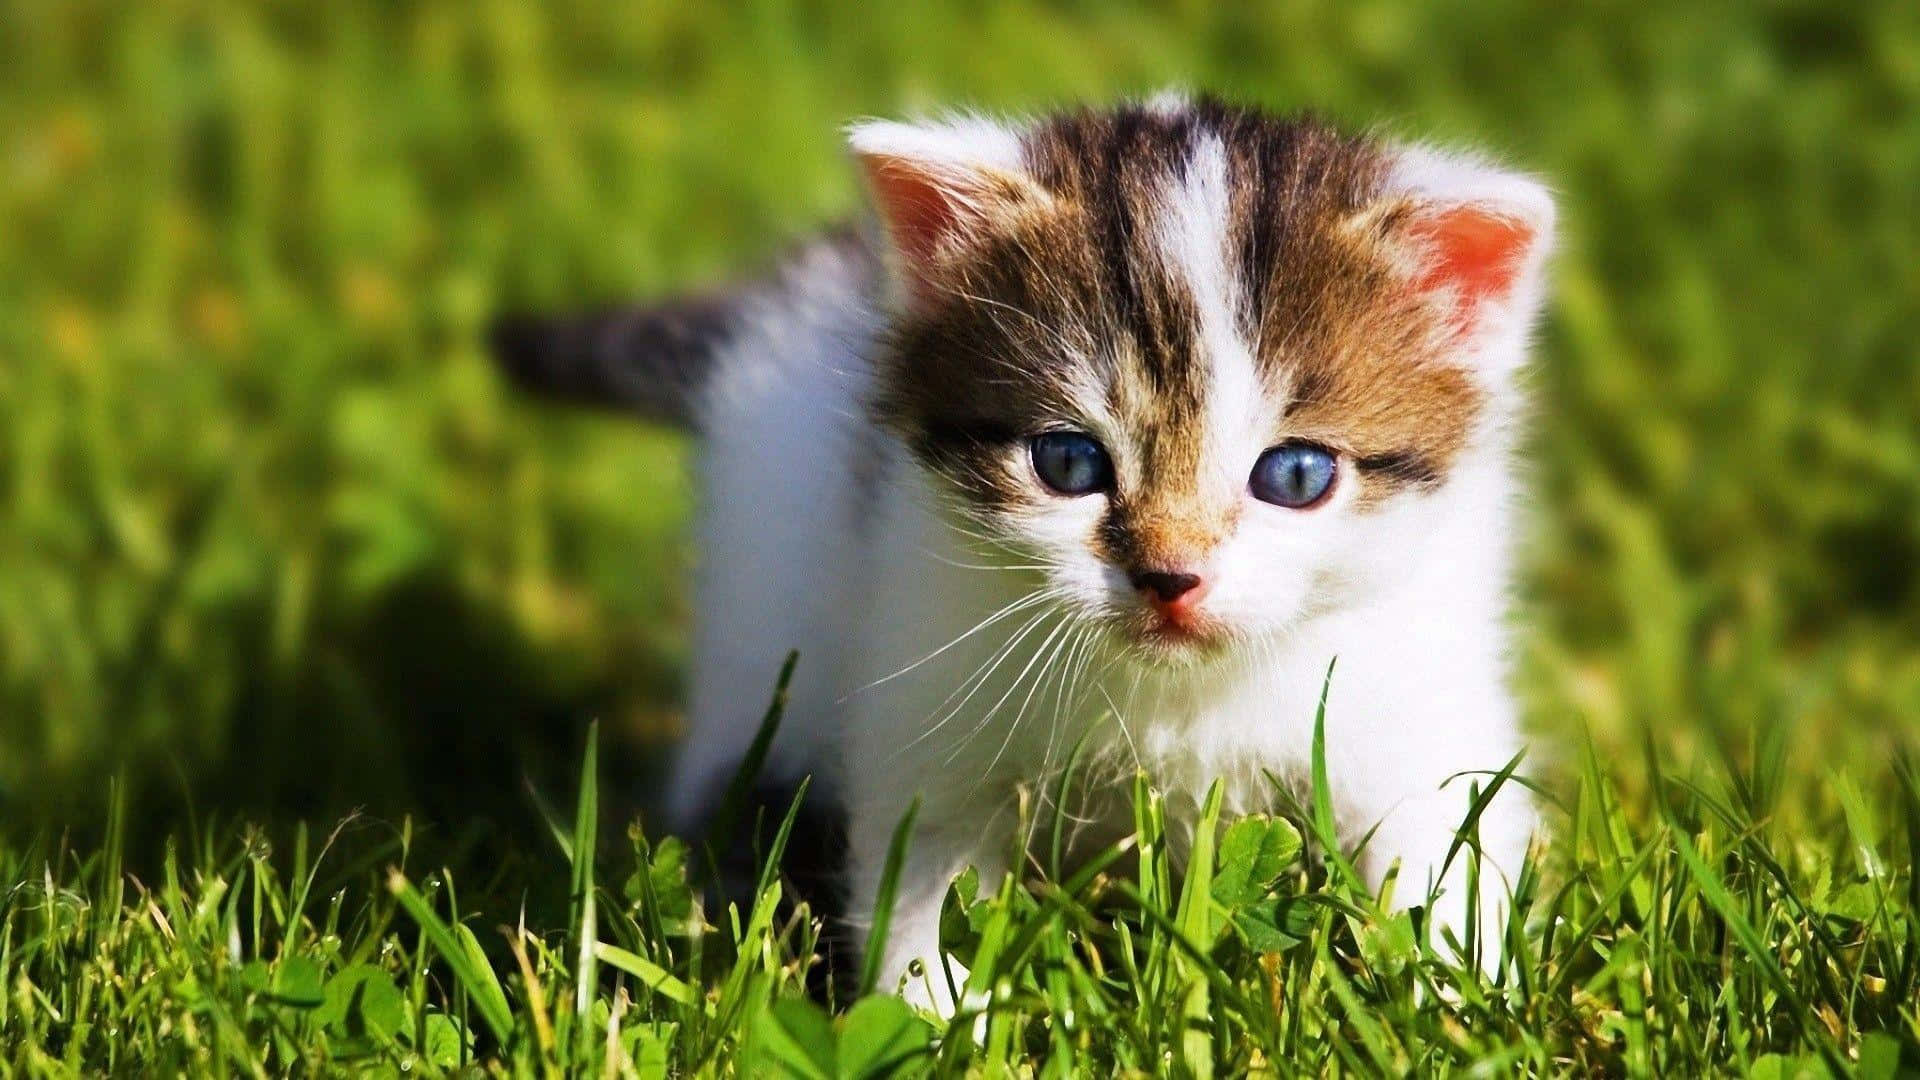 Sweet Baby Cat